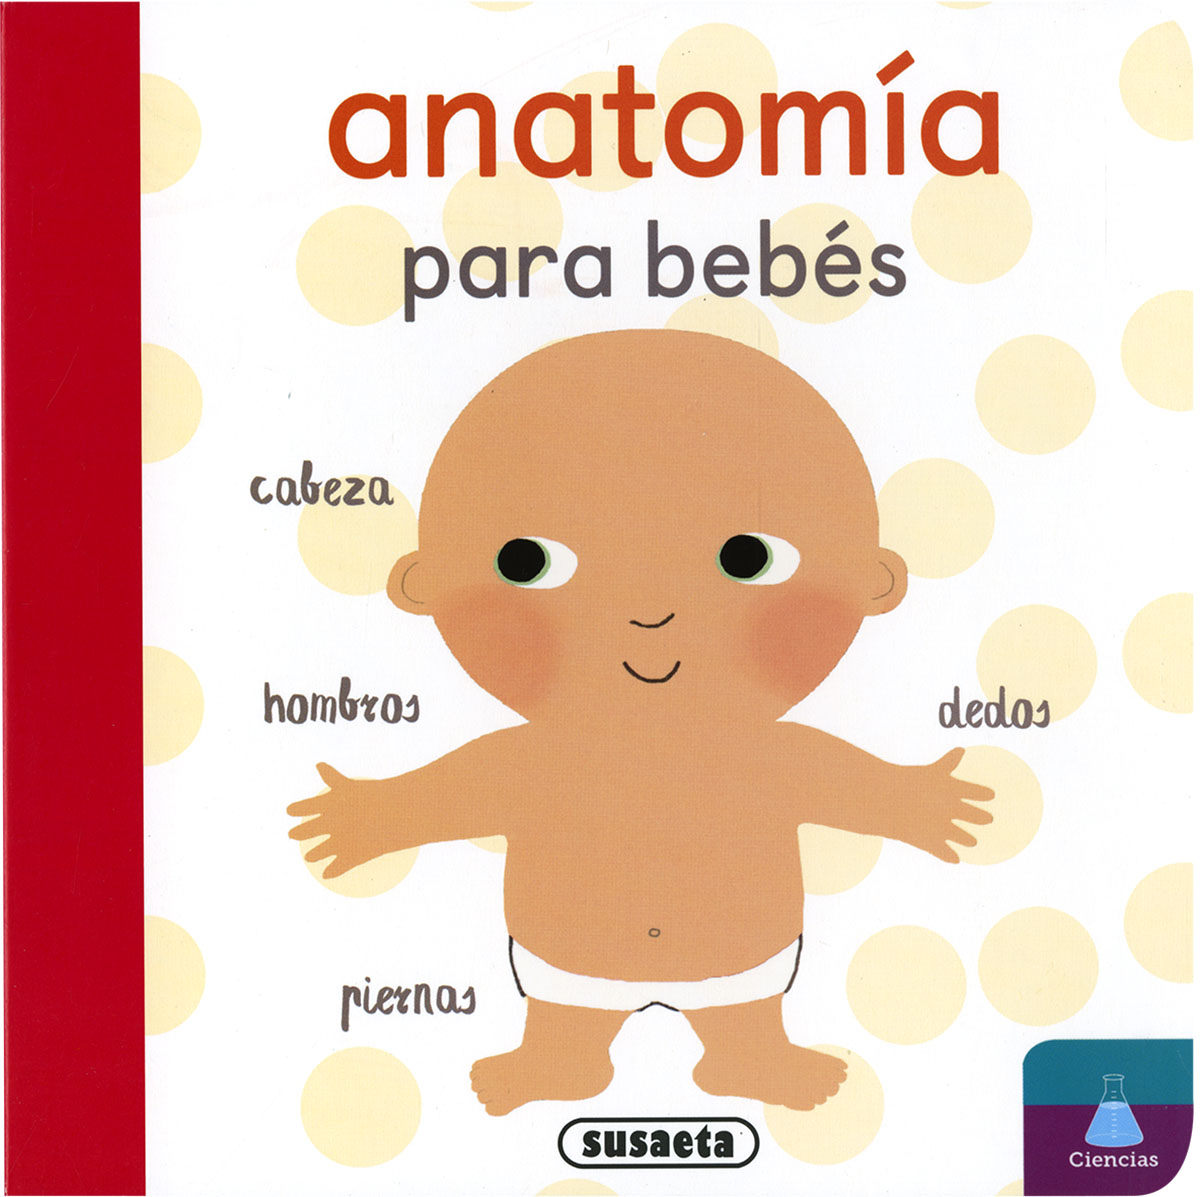 Anatoma para bebs